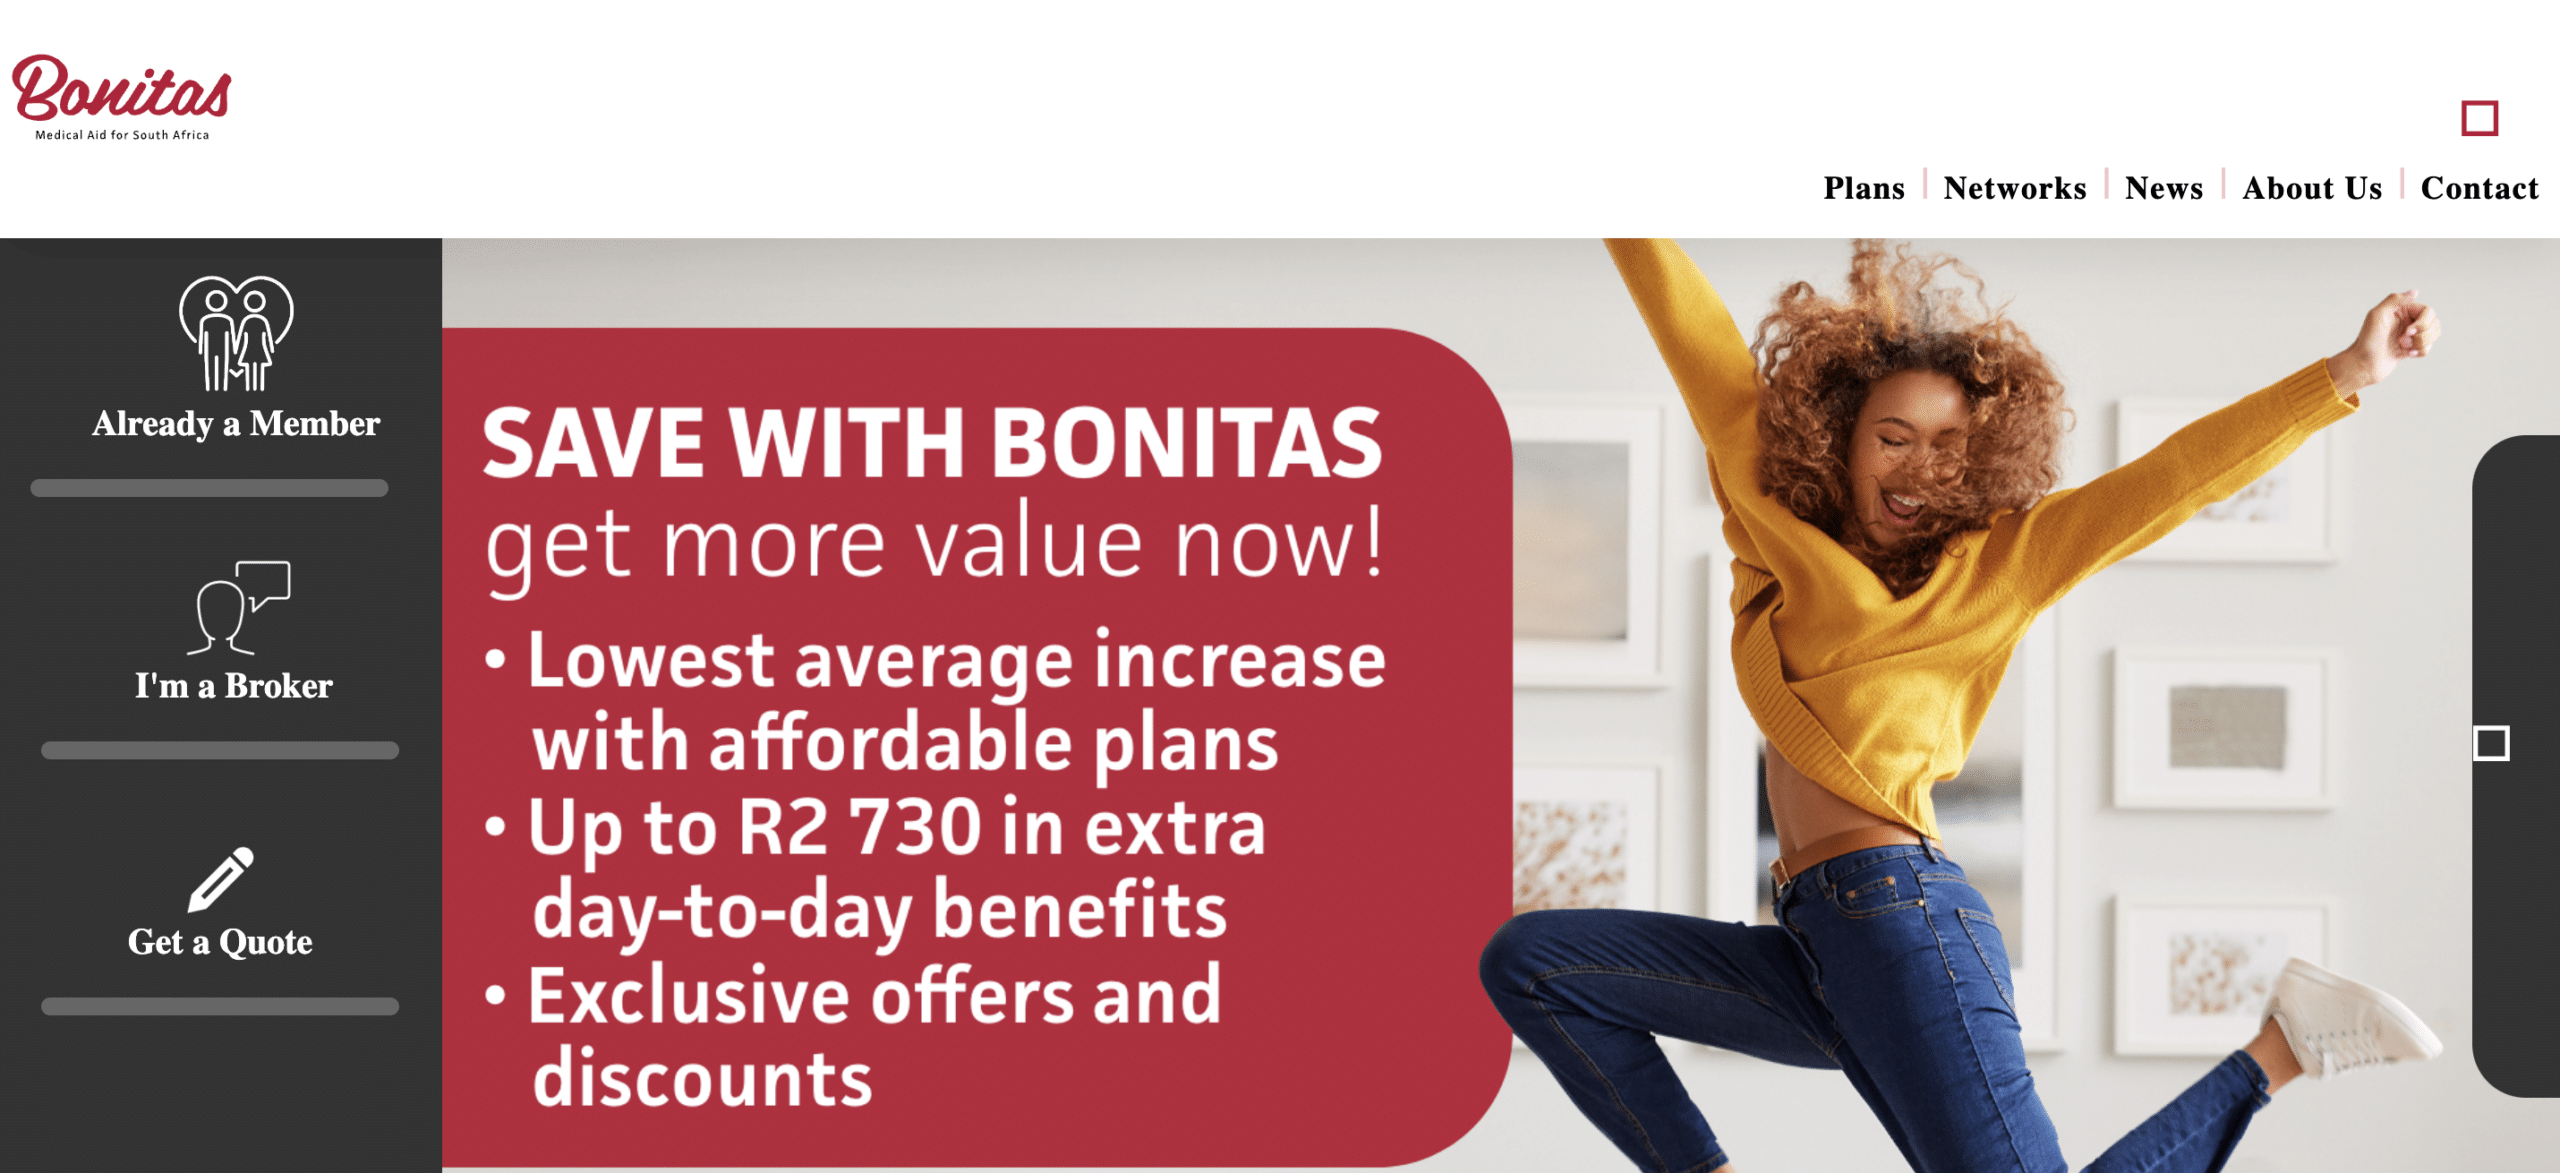 Bonitas Medical Aid Savings Plans